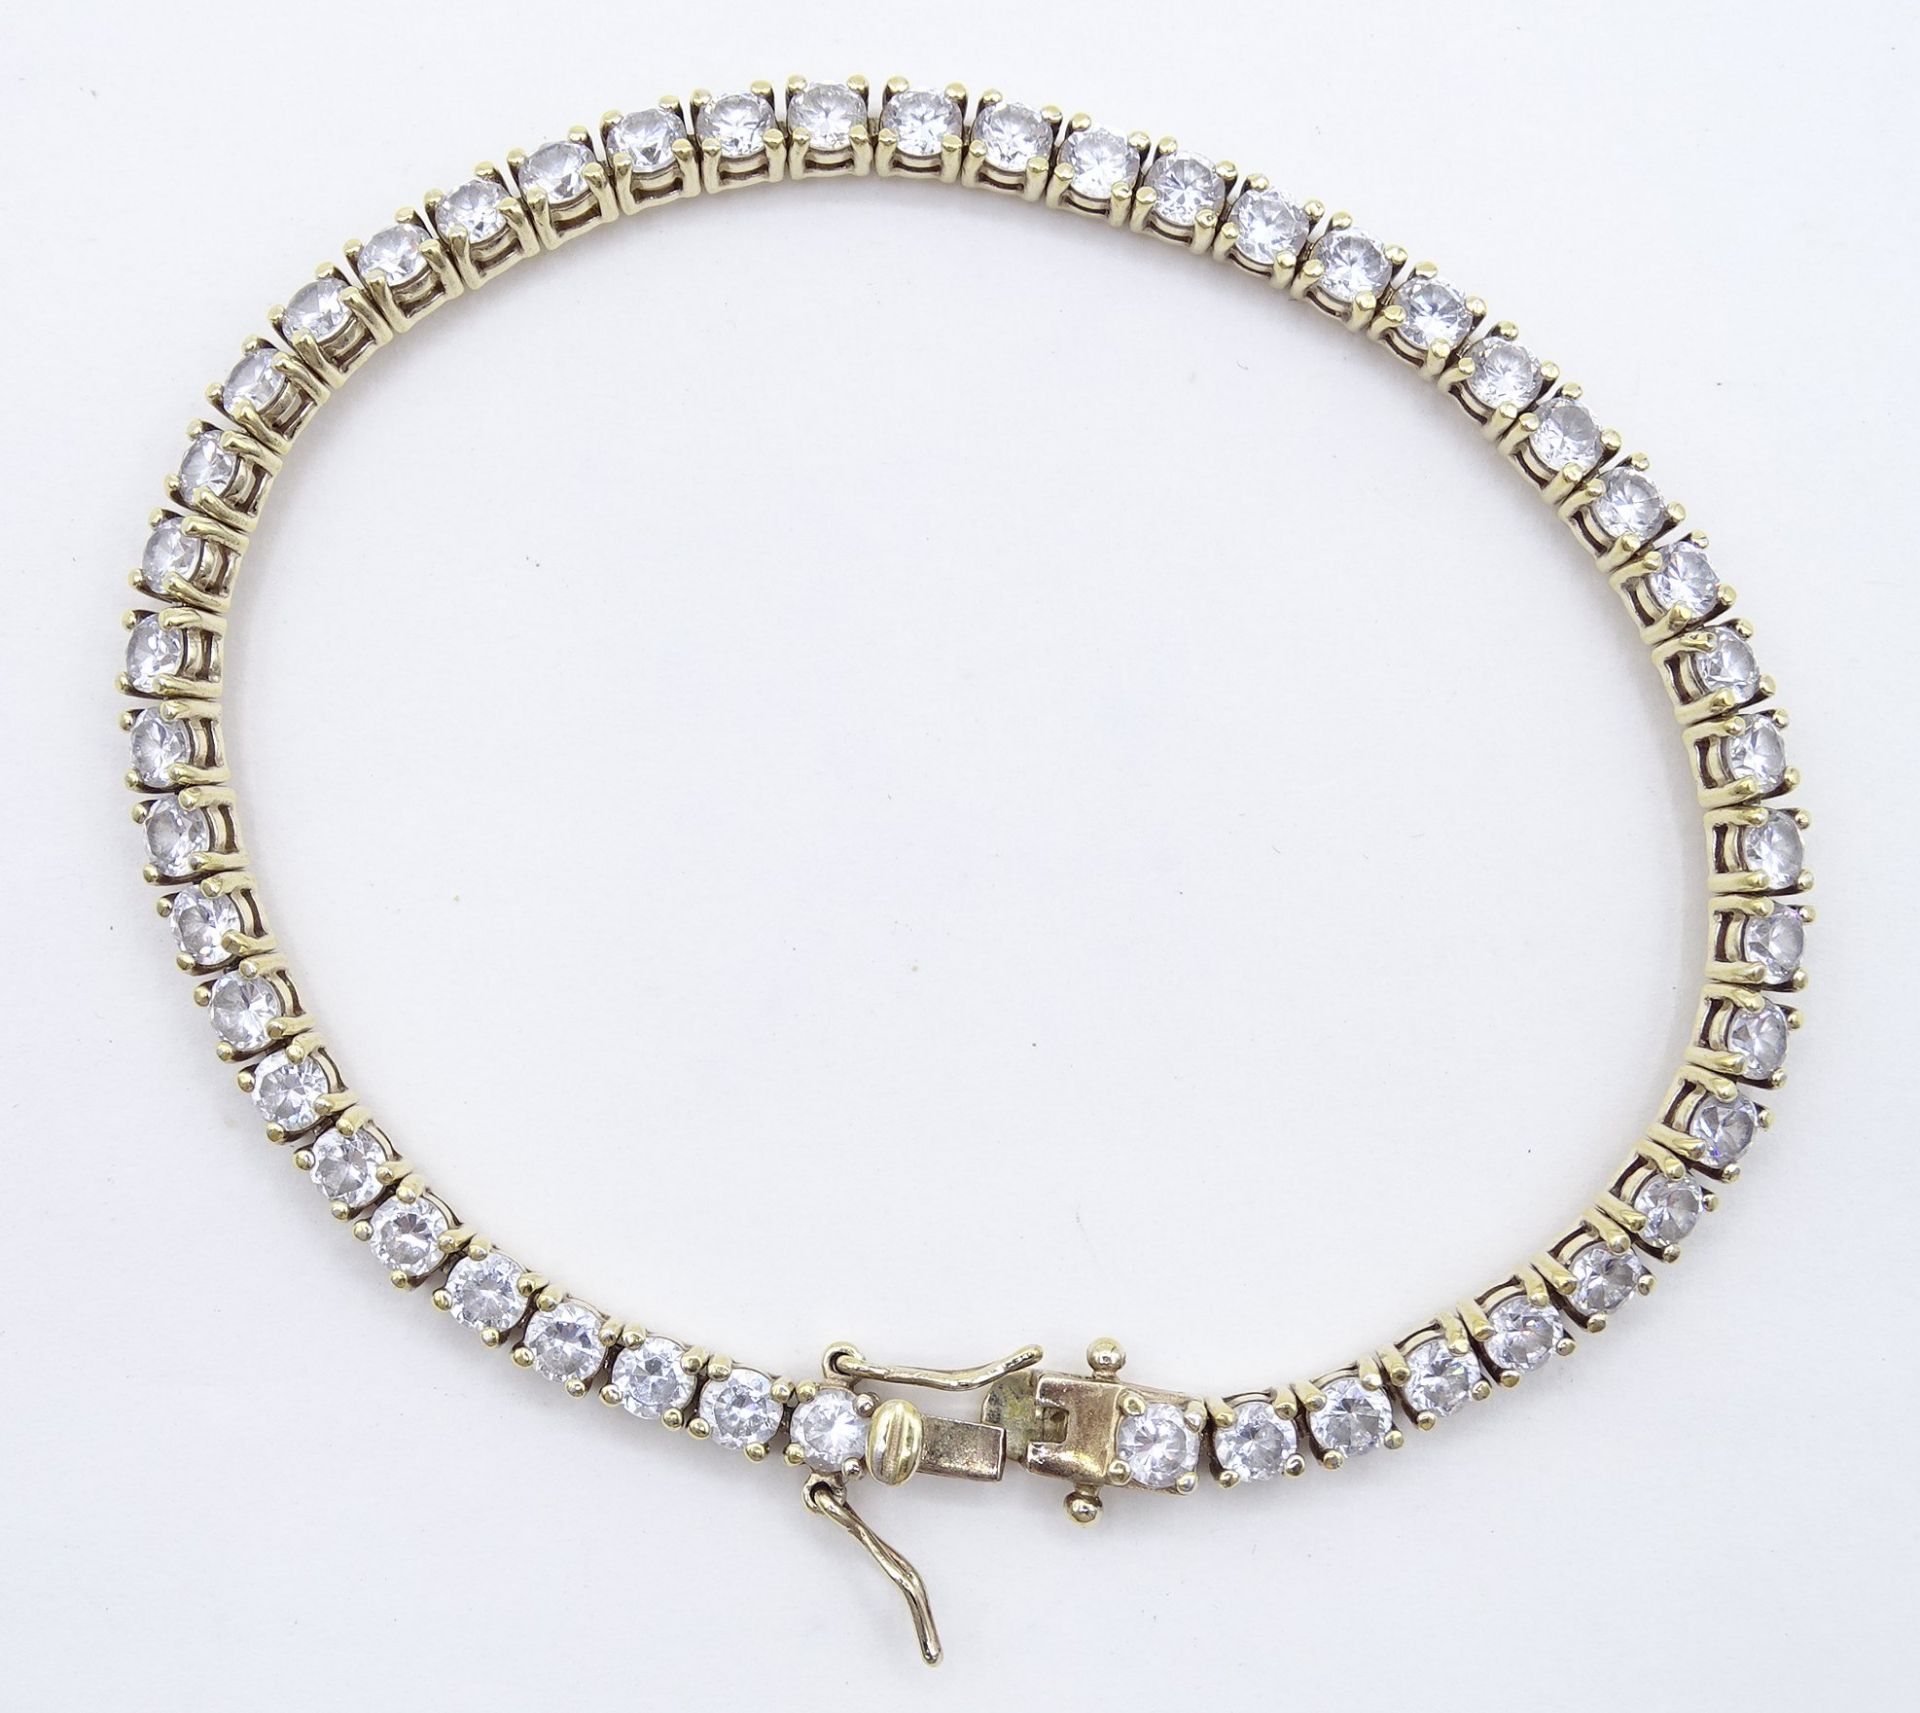 Tennisarmband, 925er-Silber vergoldet, L. 20 cm, 14 gr.